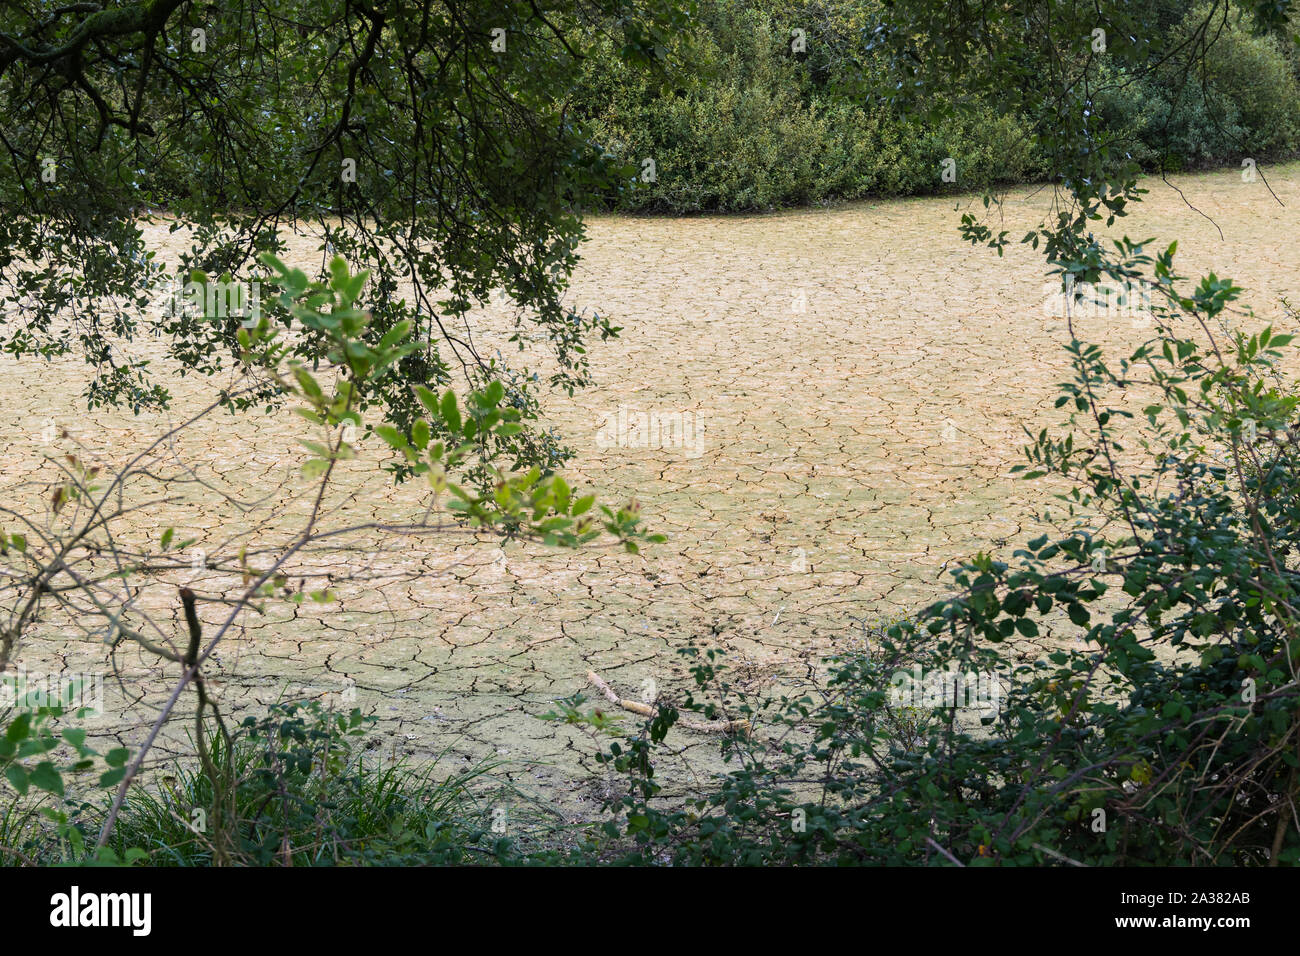 Trockene See Bett nach Wasser abgelassen, so dass trockenen rissigen Boden erinnert an eine Dürre.. Stockfoto